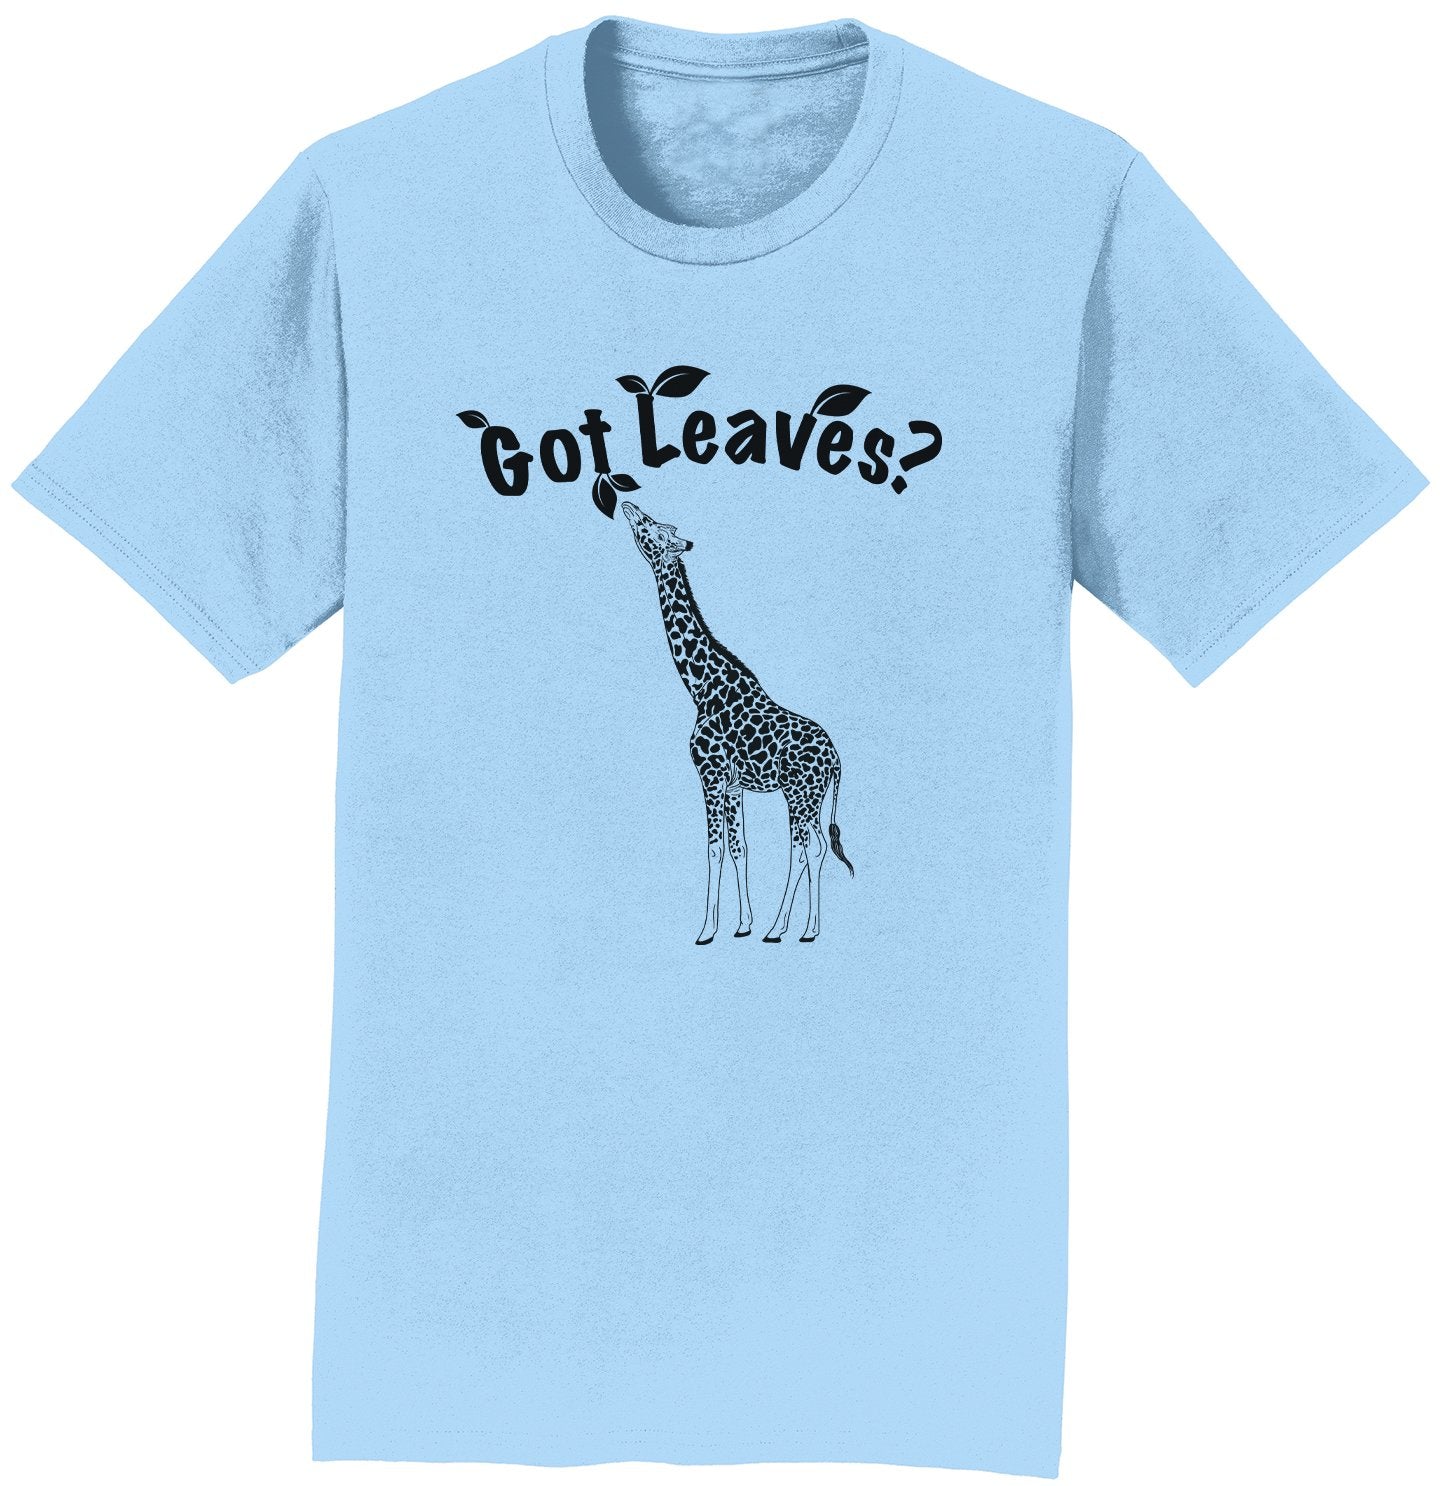 Got Leaves Giraffe - Adult Unisex T-Shirt